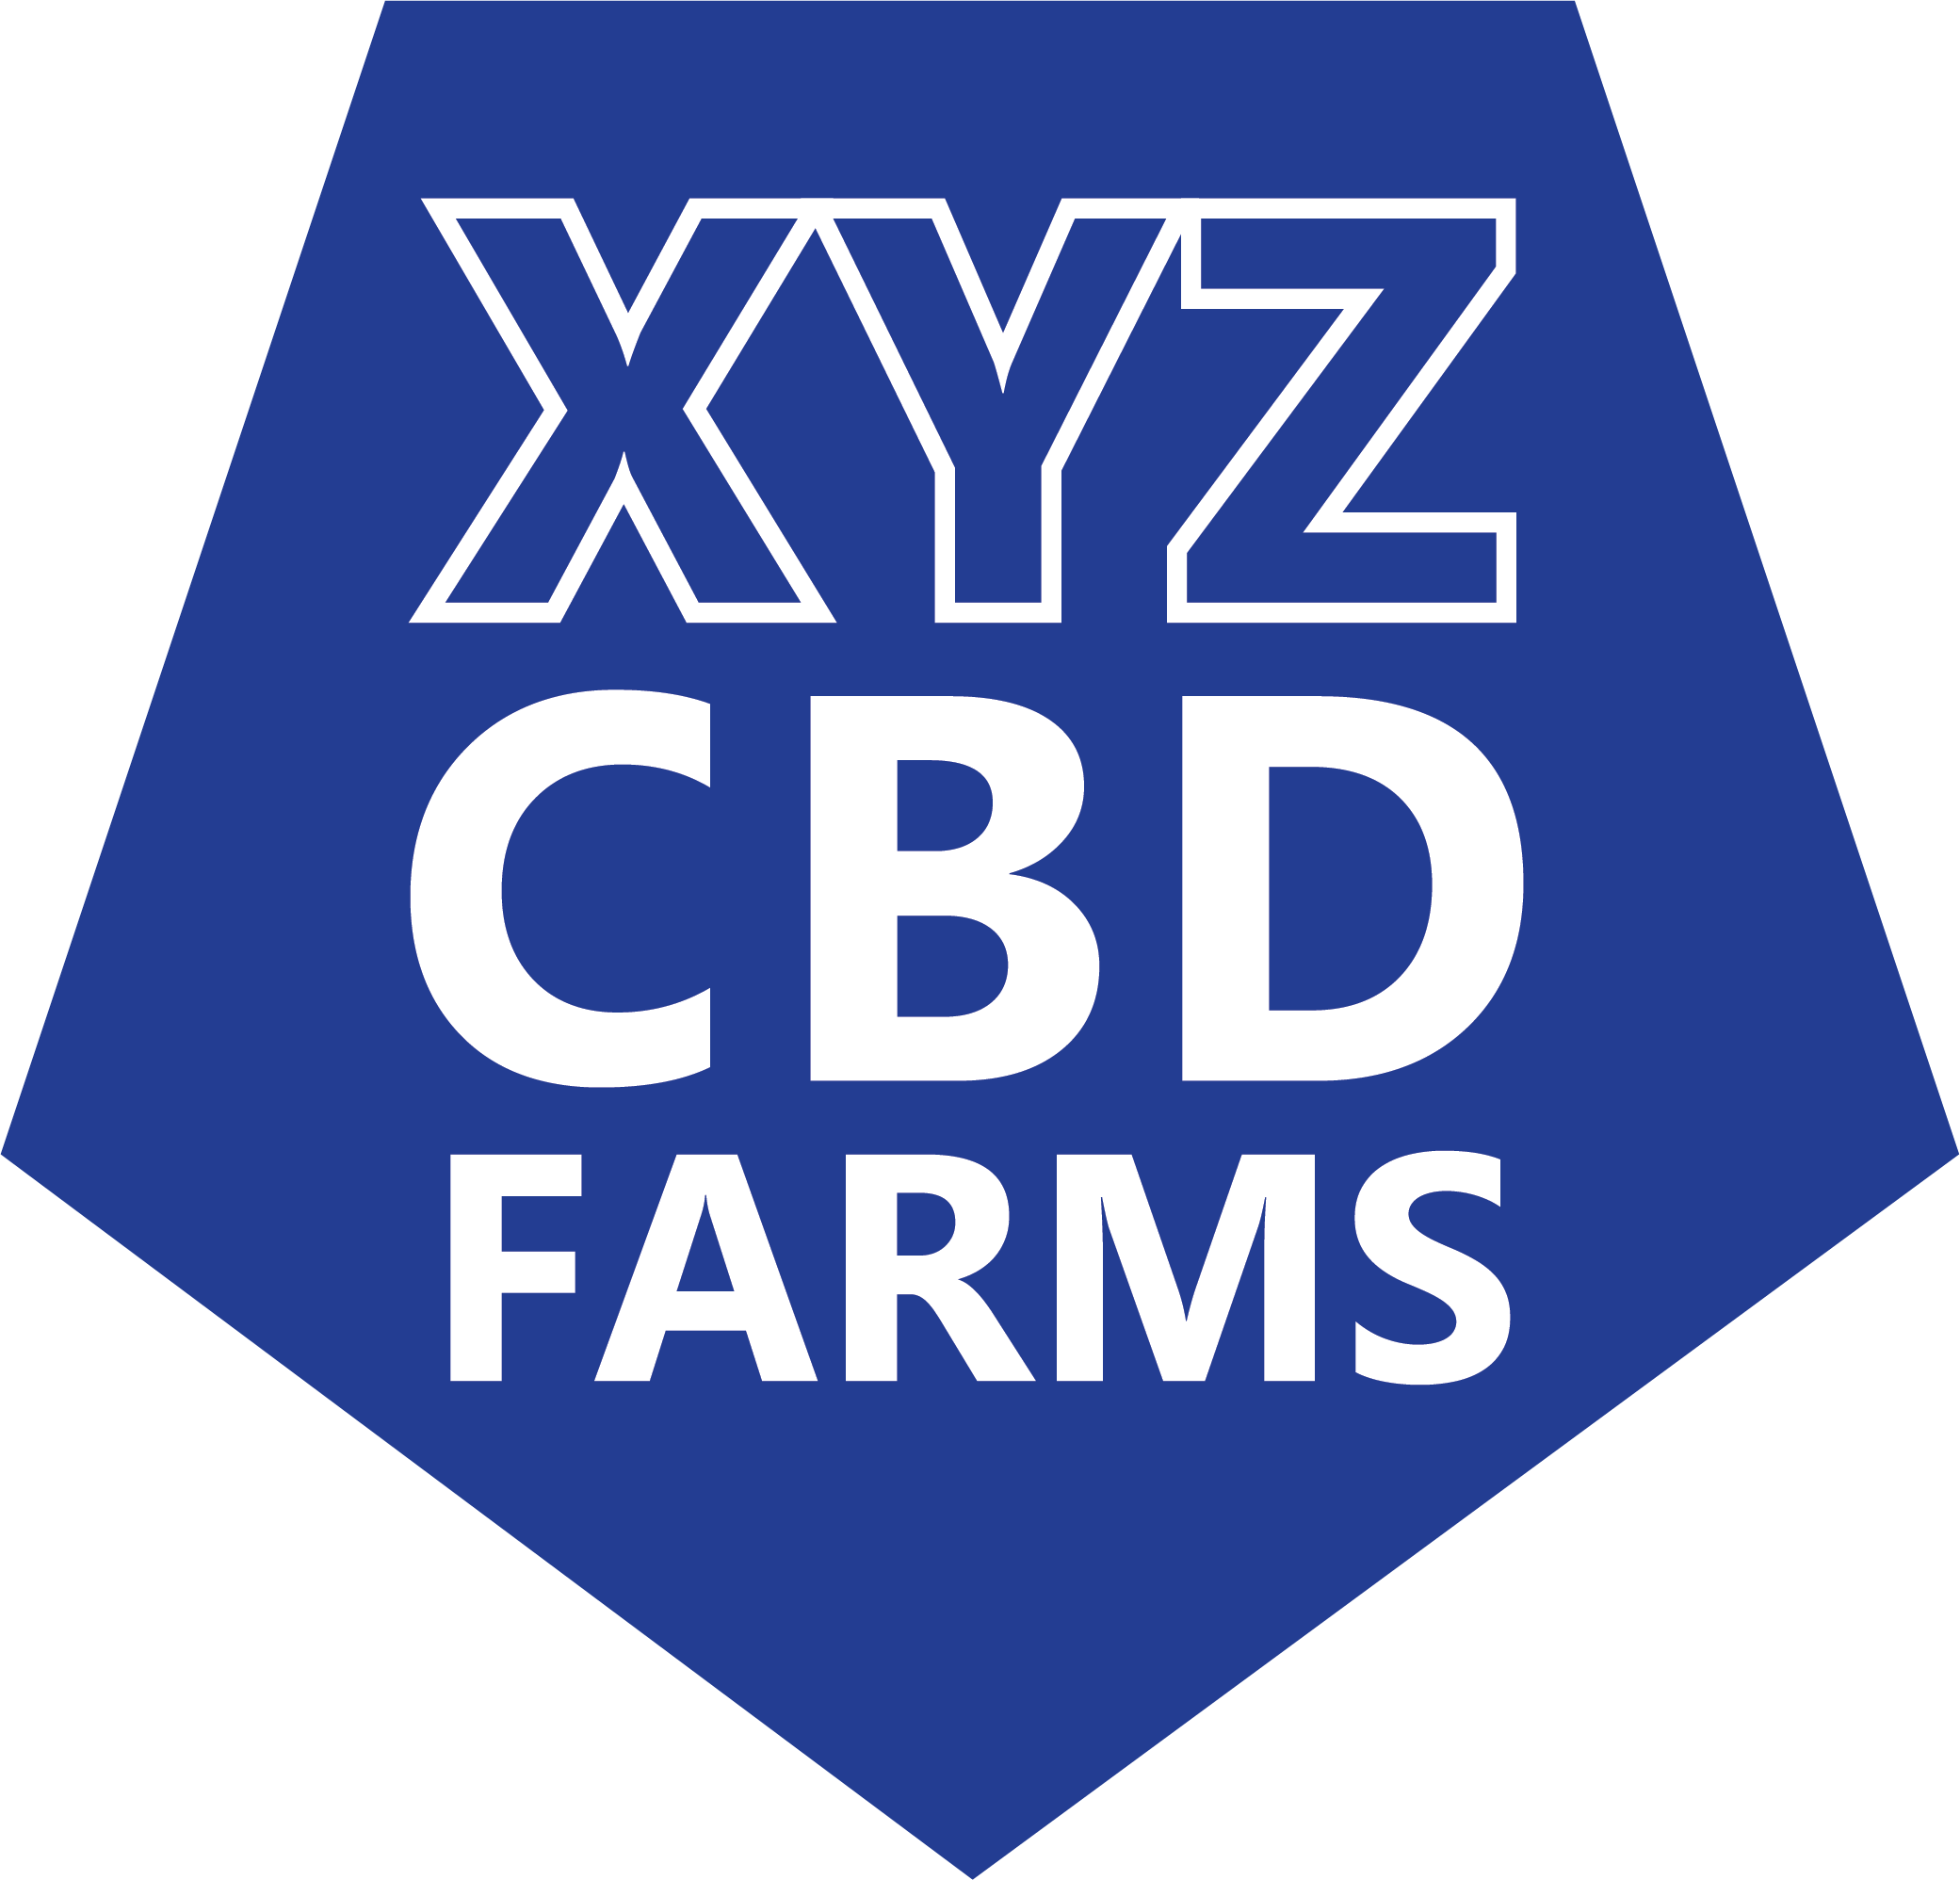 XYZ CBD FARMS